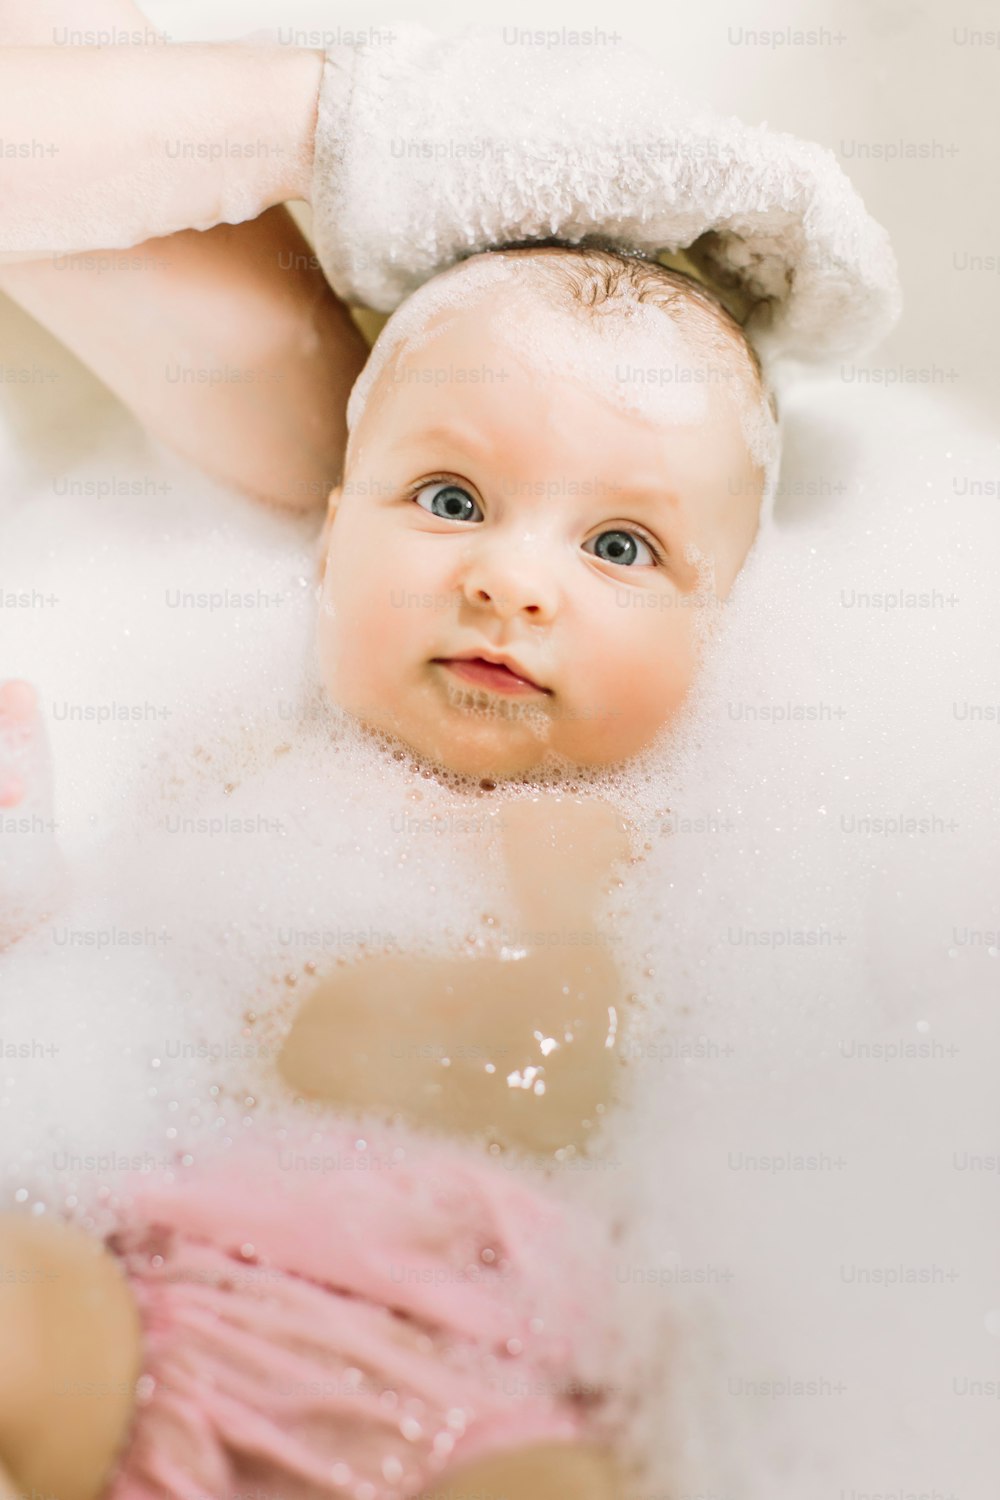 Bambino felice che ride facendo il bagno giocando con le bolle di schiuma. Bambino piccolo in una vasca da bagno. Lavaggio e bagnetto dei neonati. Igiene e cura dei bambini piccoli. Adorabile bambino da bagno con schiuma di sapone sui capelli